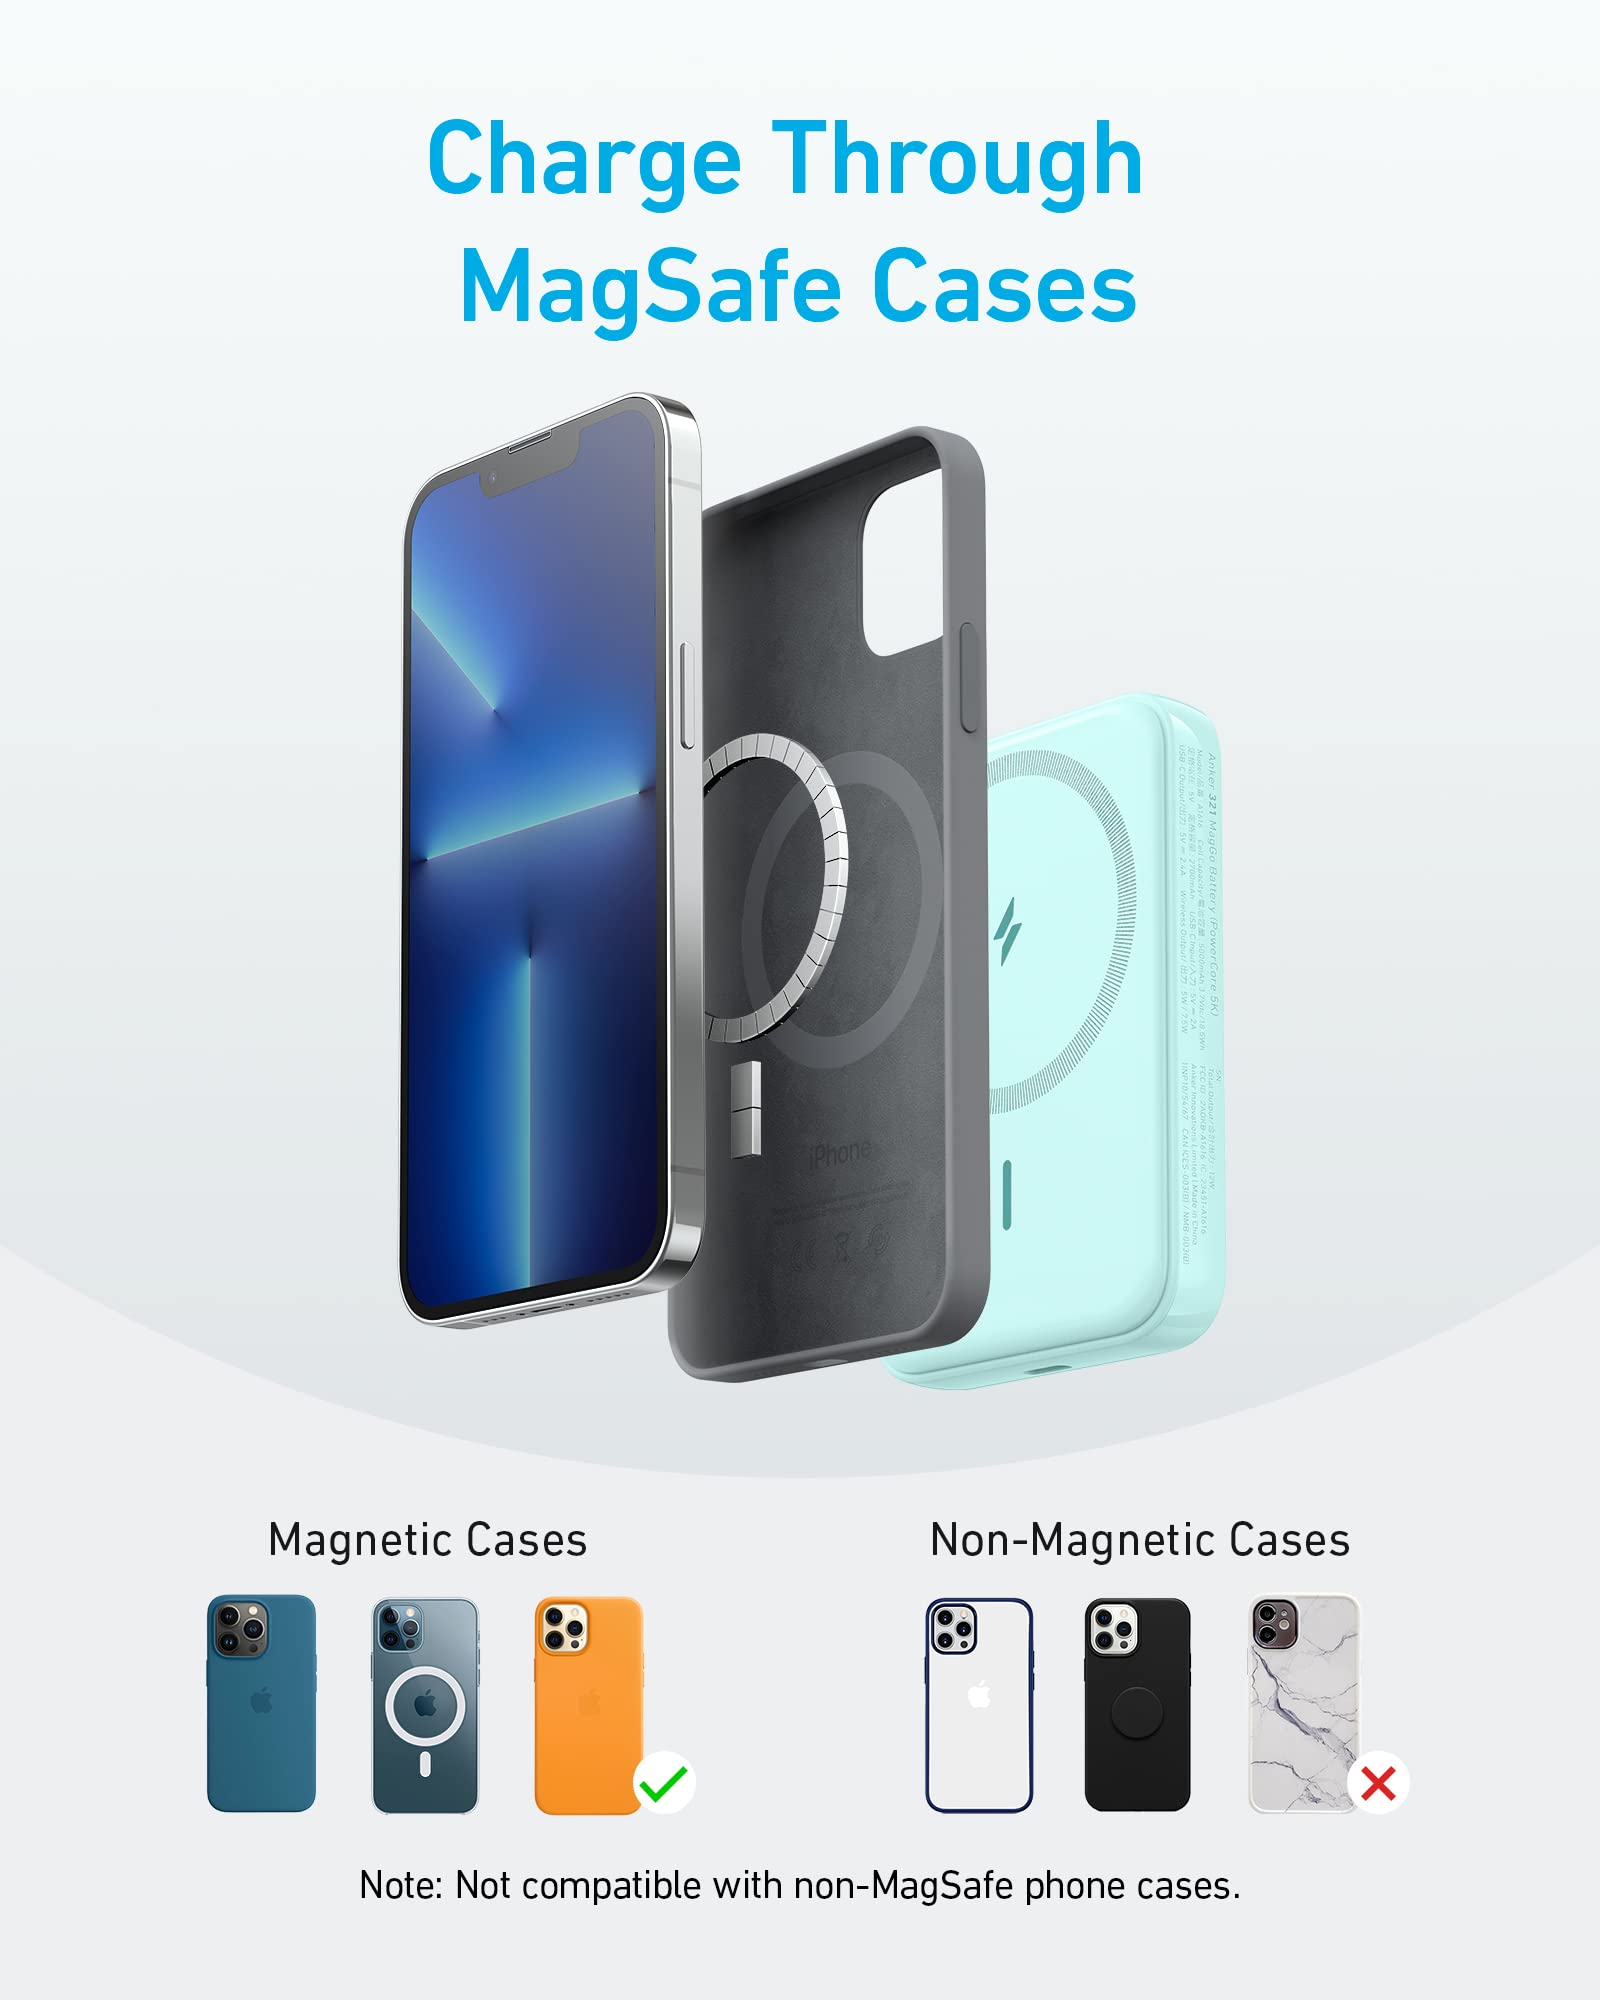 Cargador Batería Anker Magsafe Stand Para iPhone 12 Pro Max